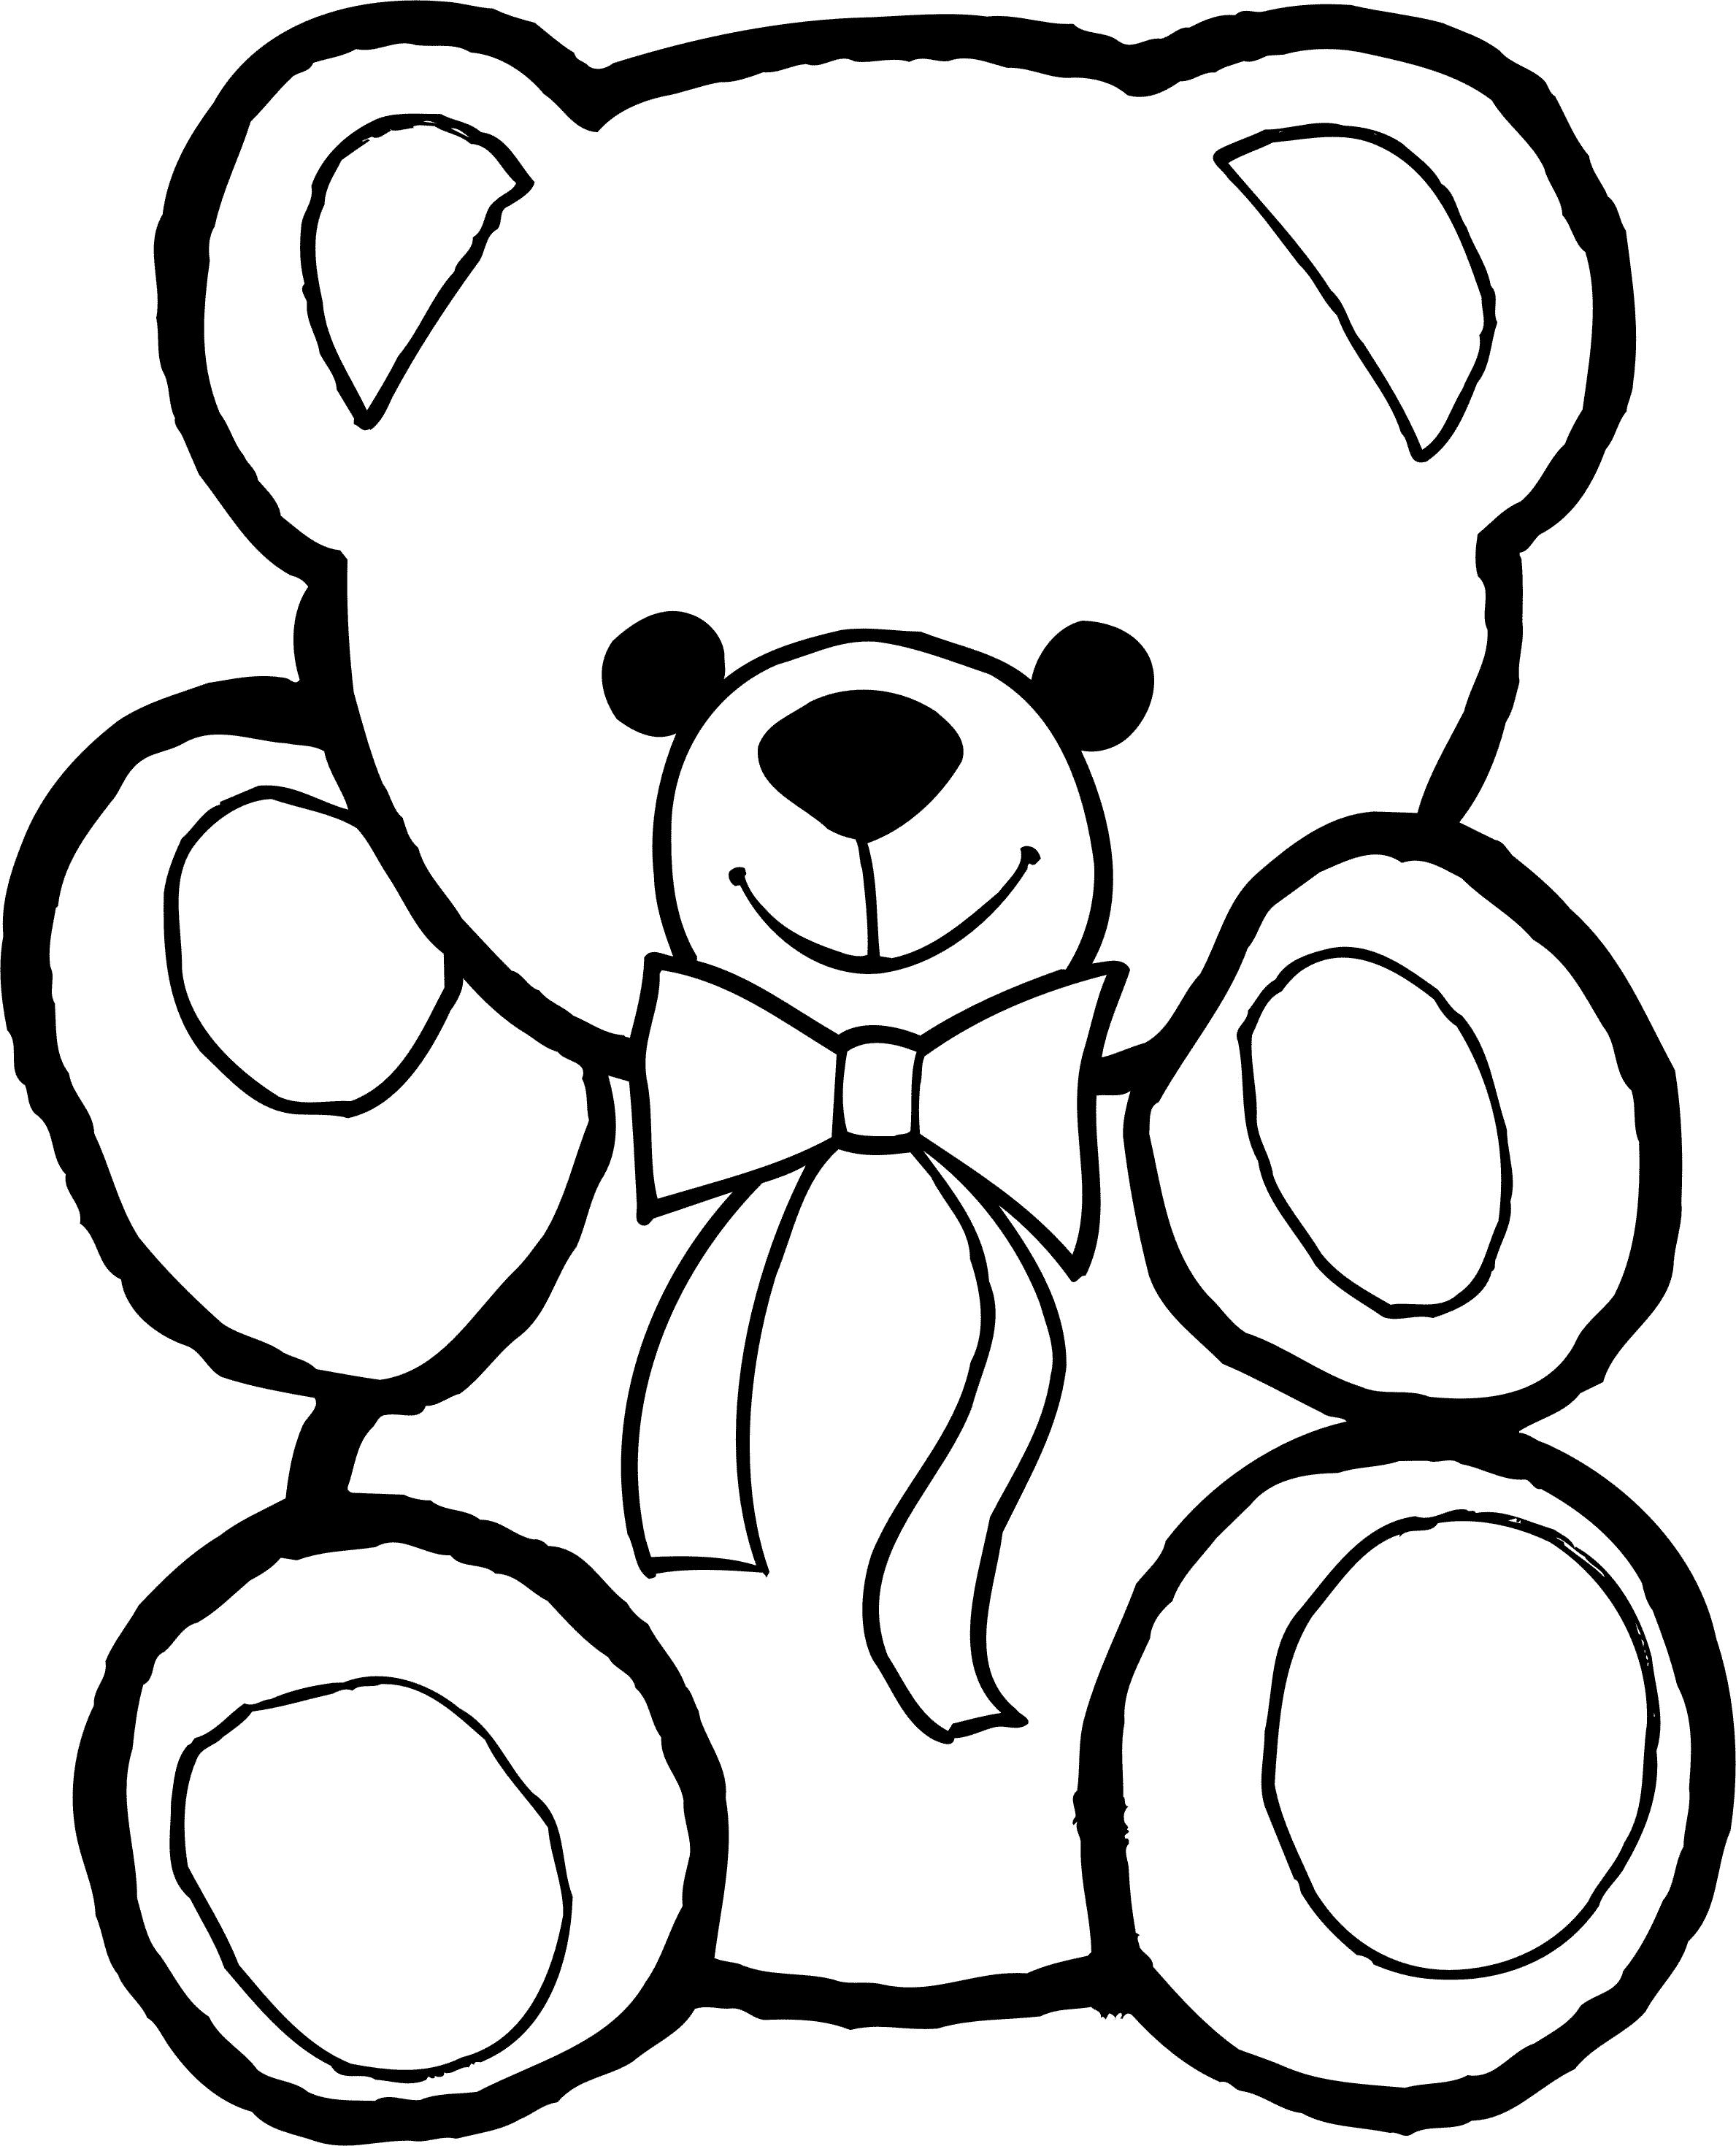 Раскраски с мишками Тедди, милые и красивые раскраски для детей с медвежатами  Раскраска для малыша с широким контуром мишка Тедди